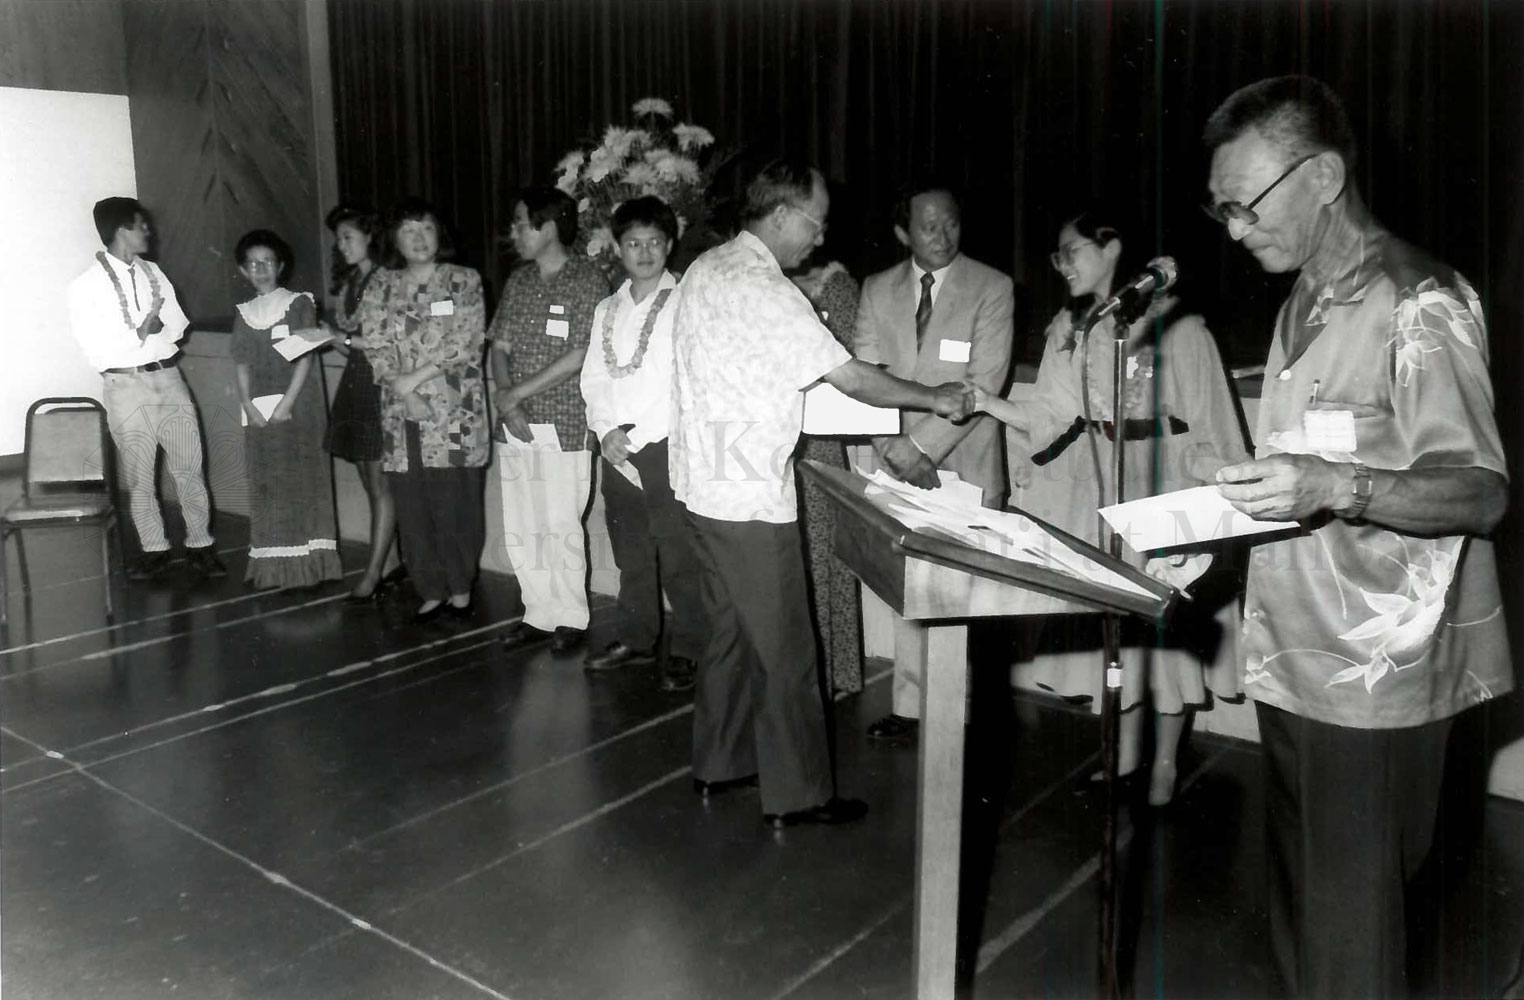 Scholarship presentation by Donald C.W. Kim, August 14, 1992